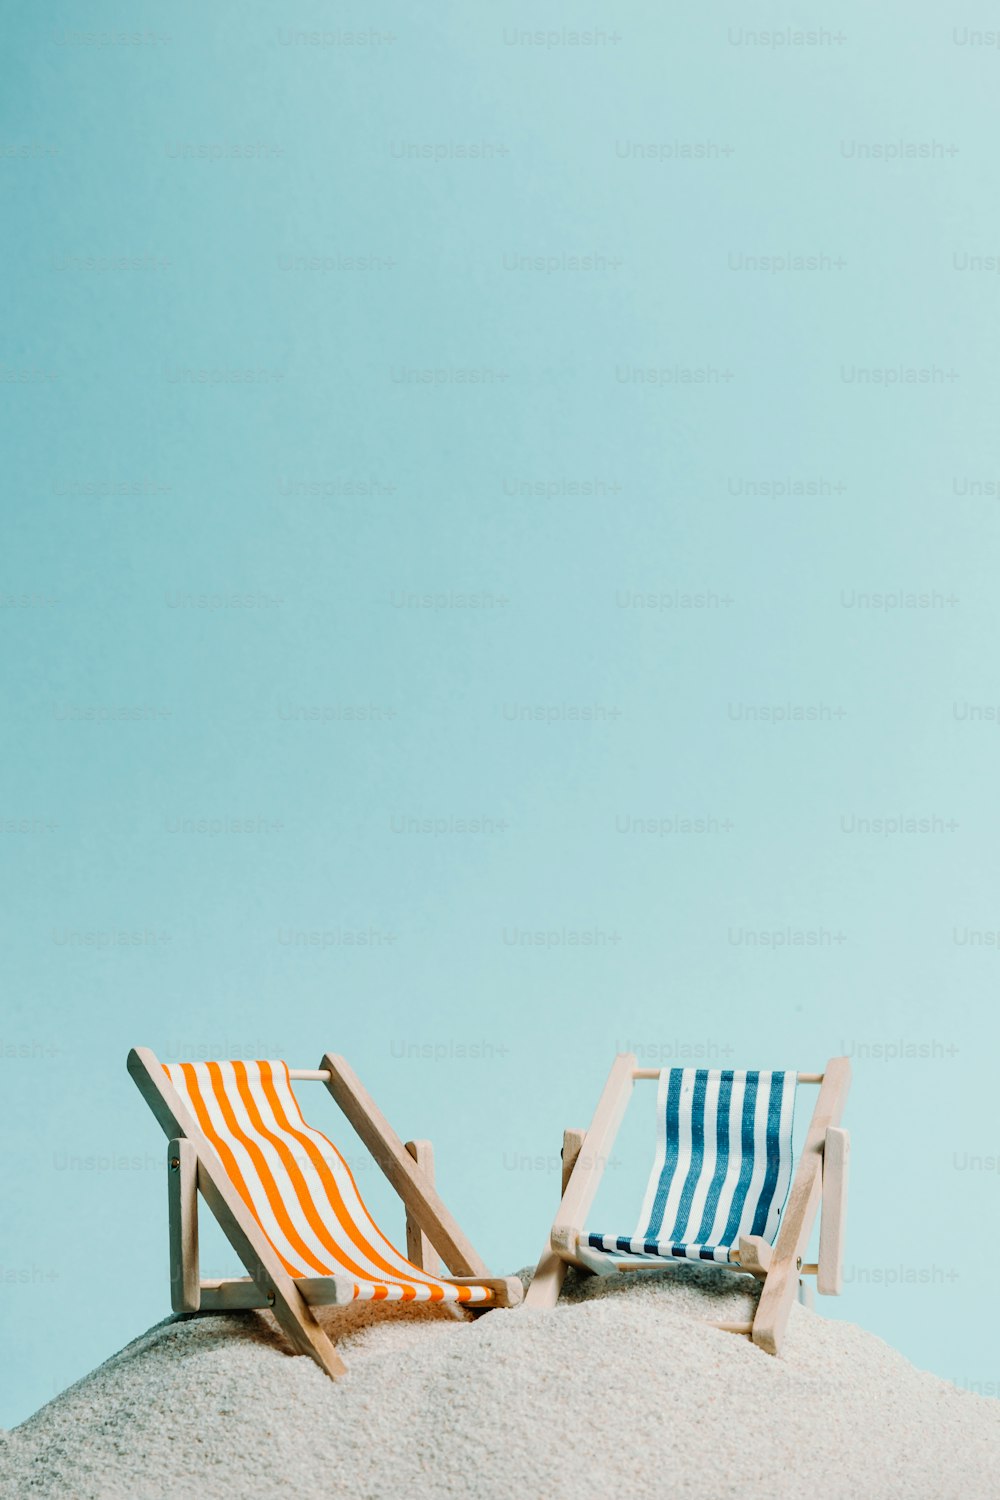 砂浜の上に座っている椅子